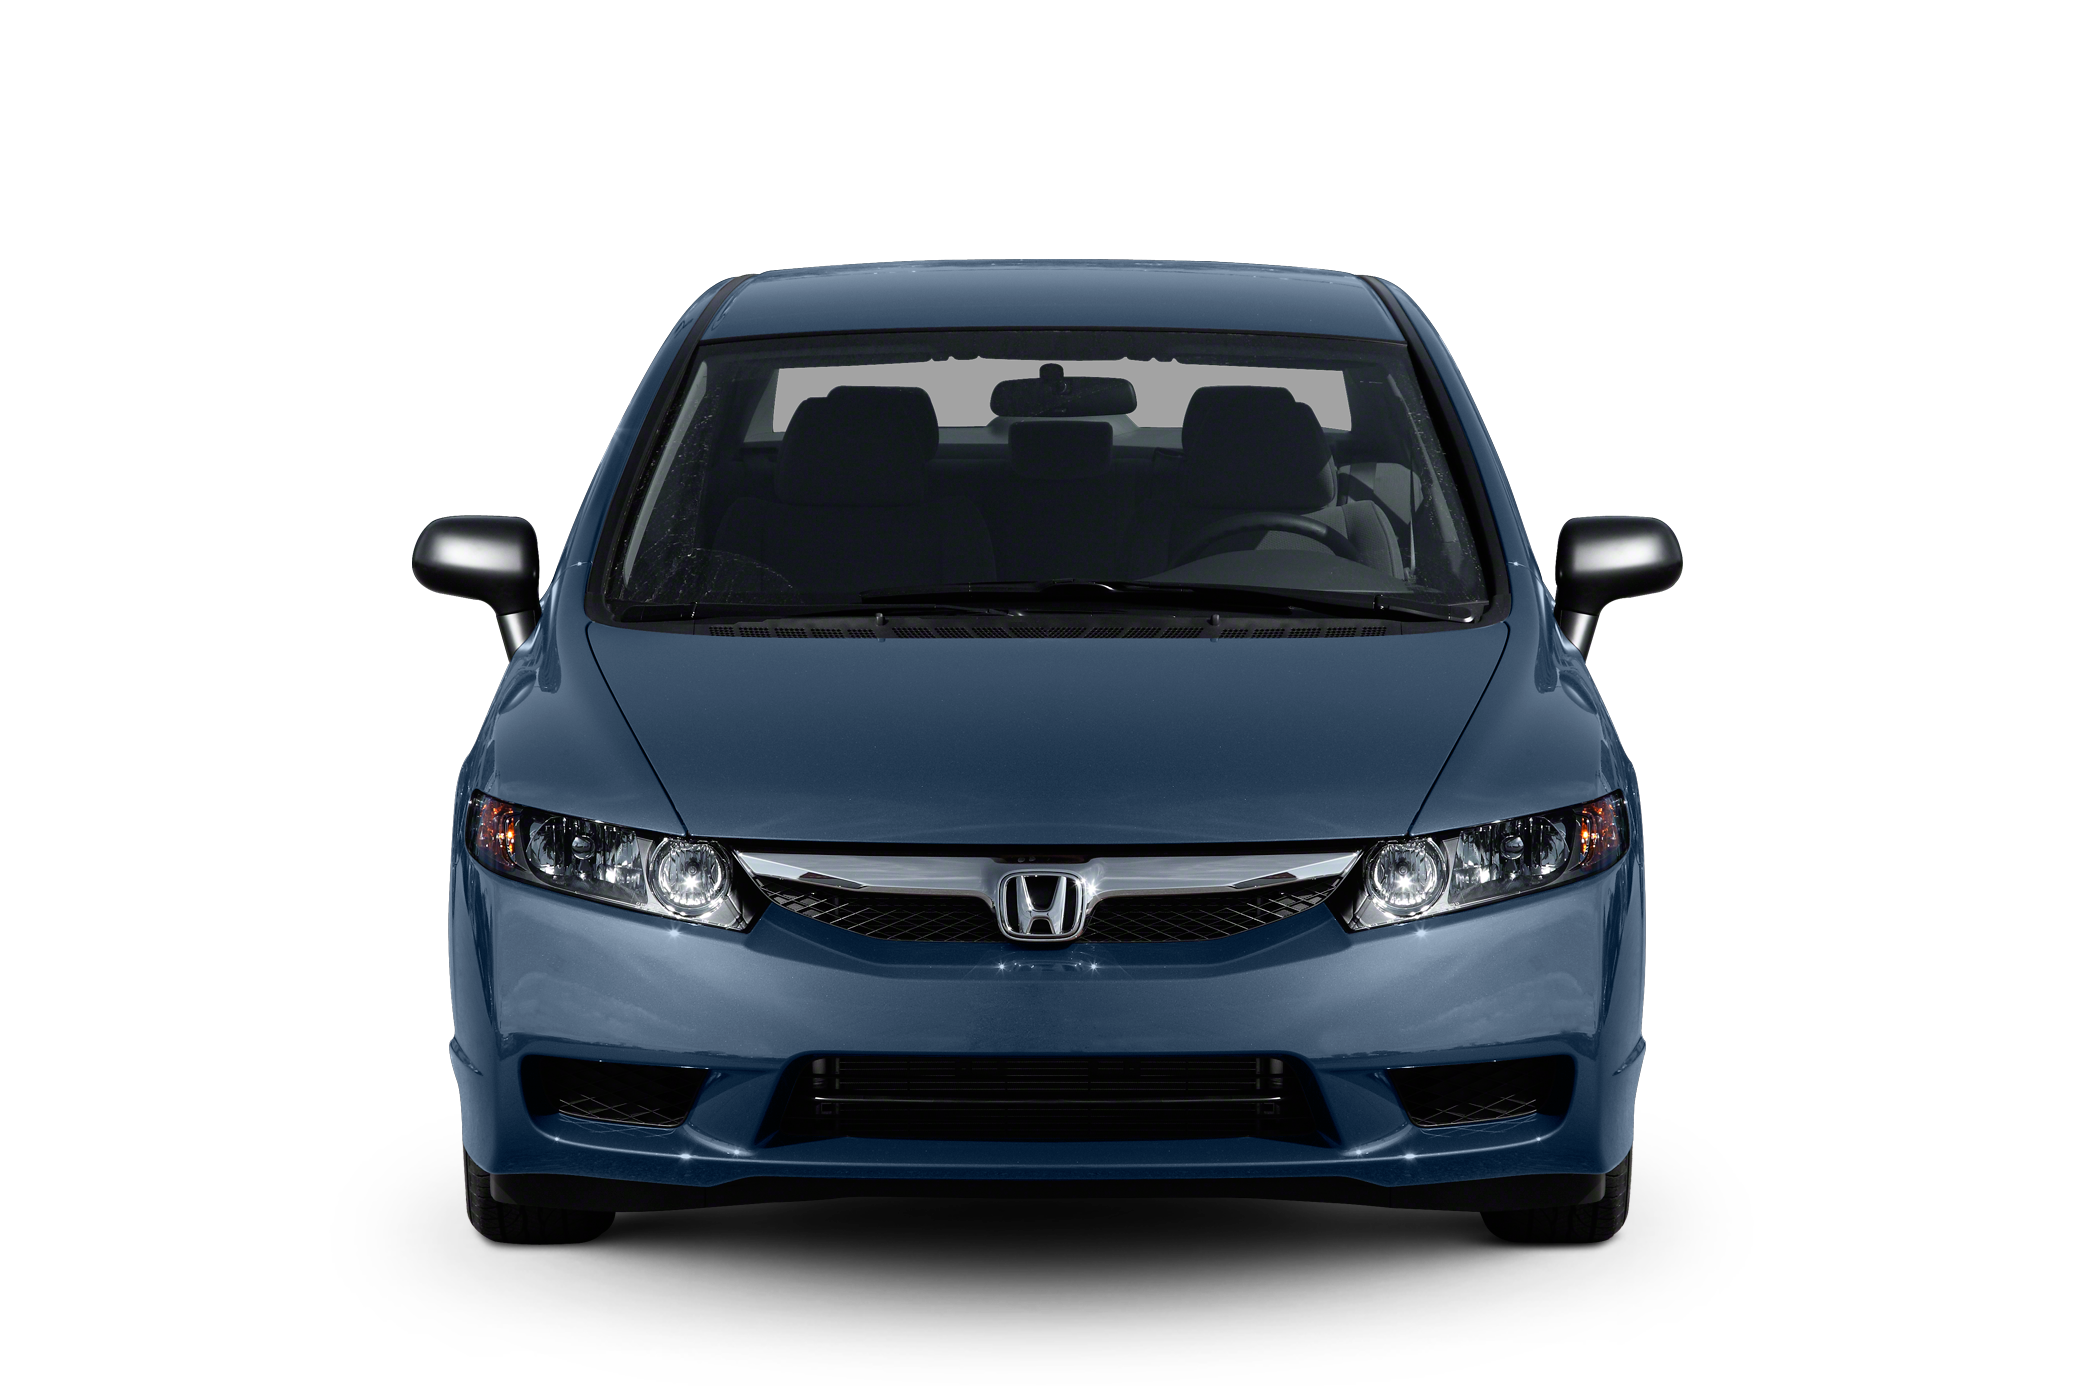 2011 Honda Civic